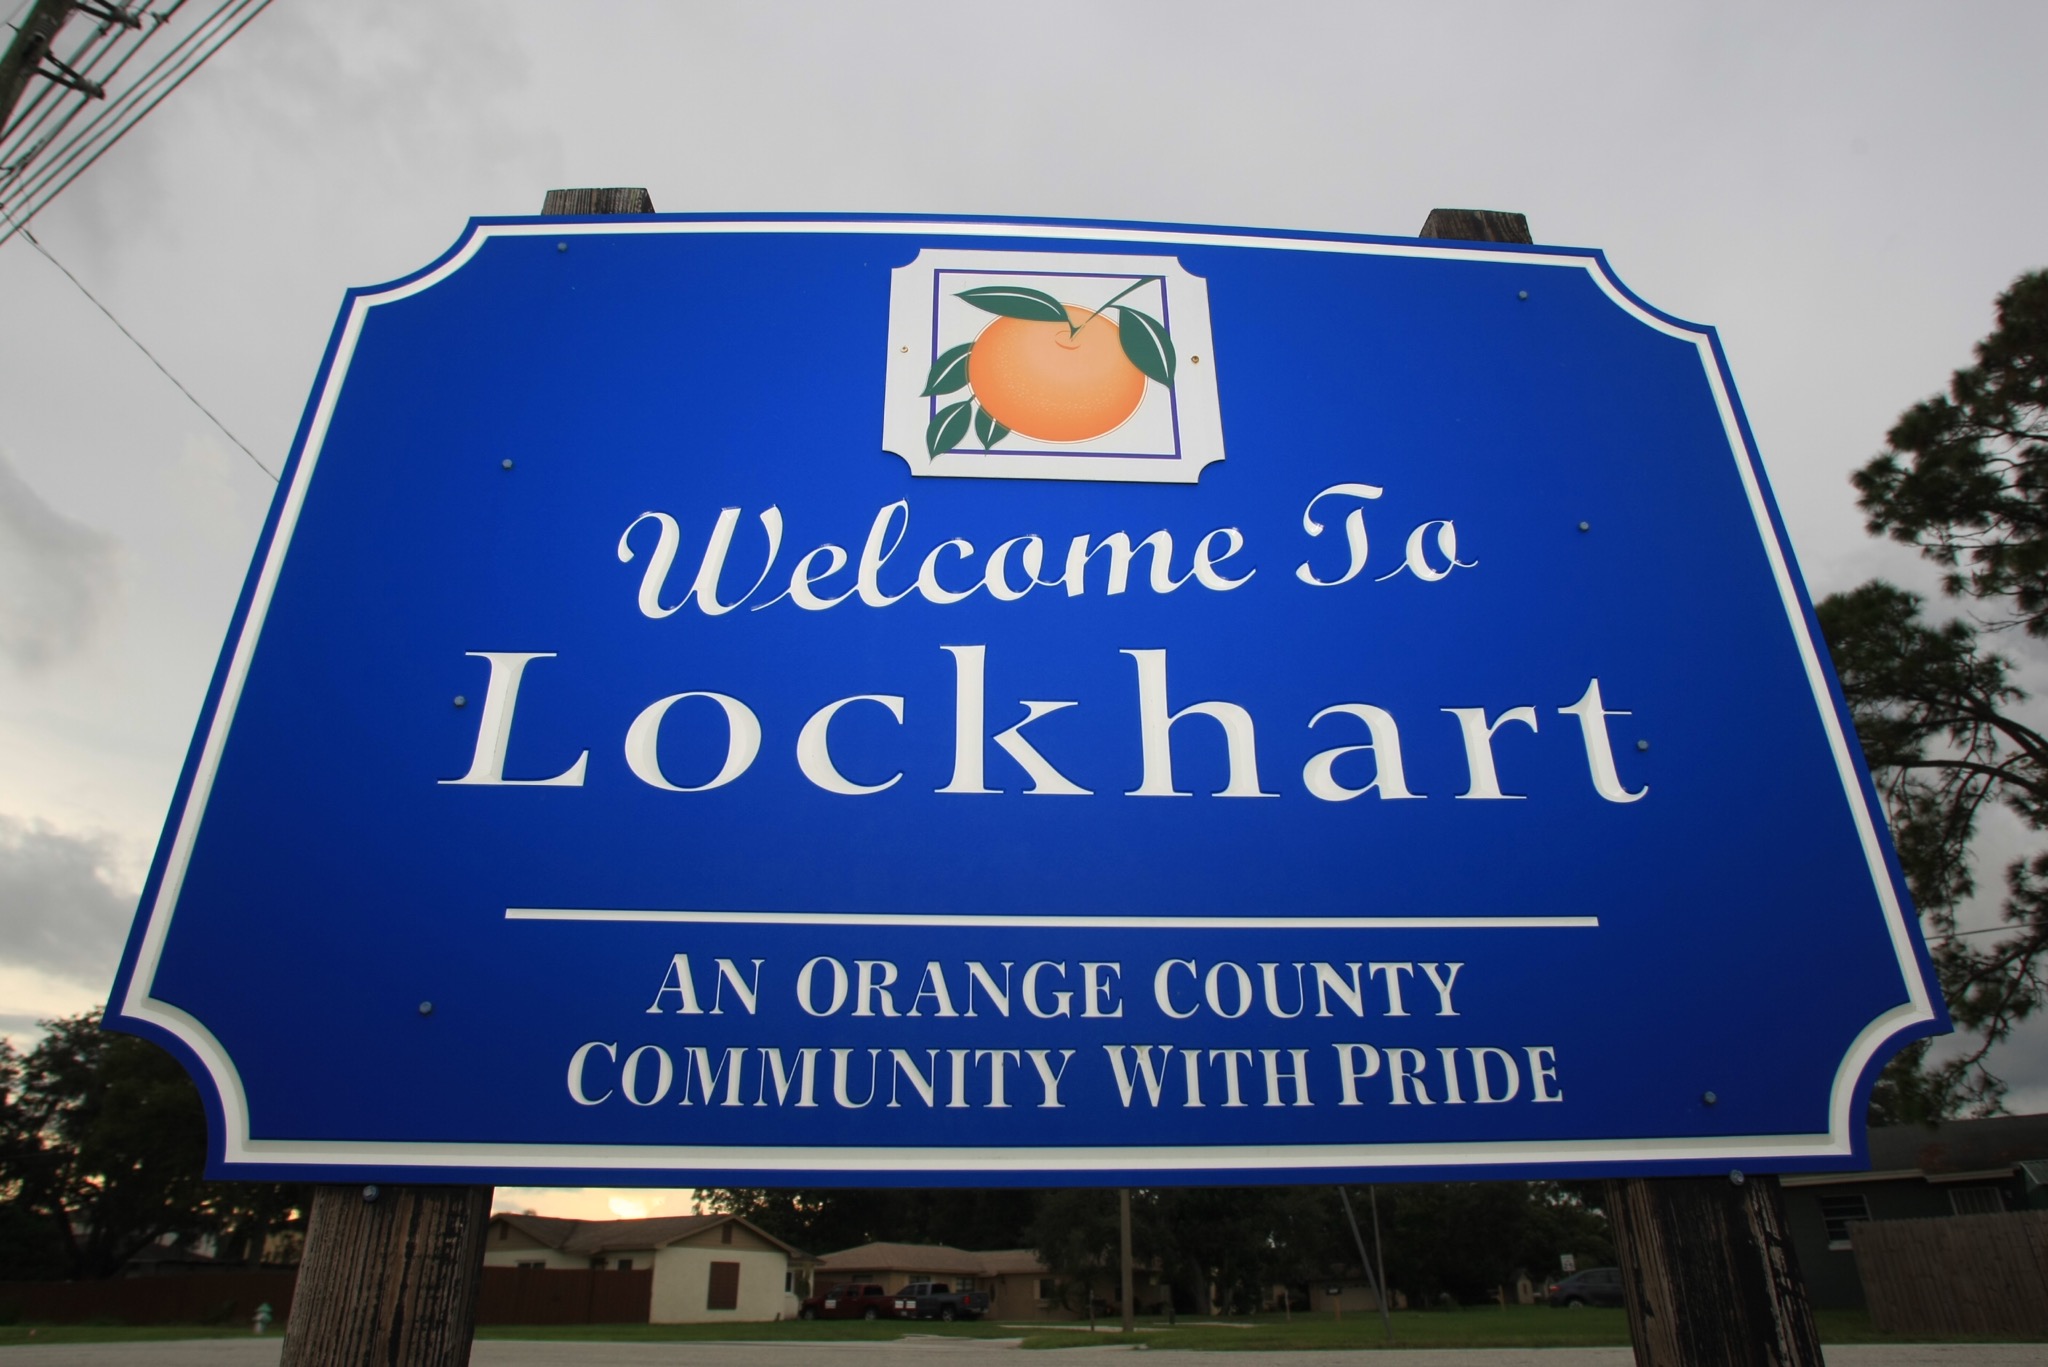 El cartel dice: "Bienvenido a Lockhart, una comunidad con orgullo del condado de Orange"